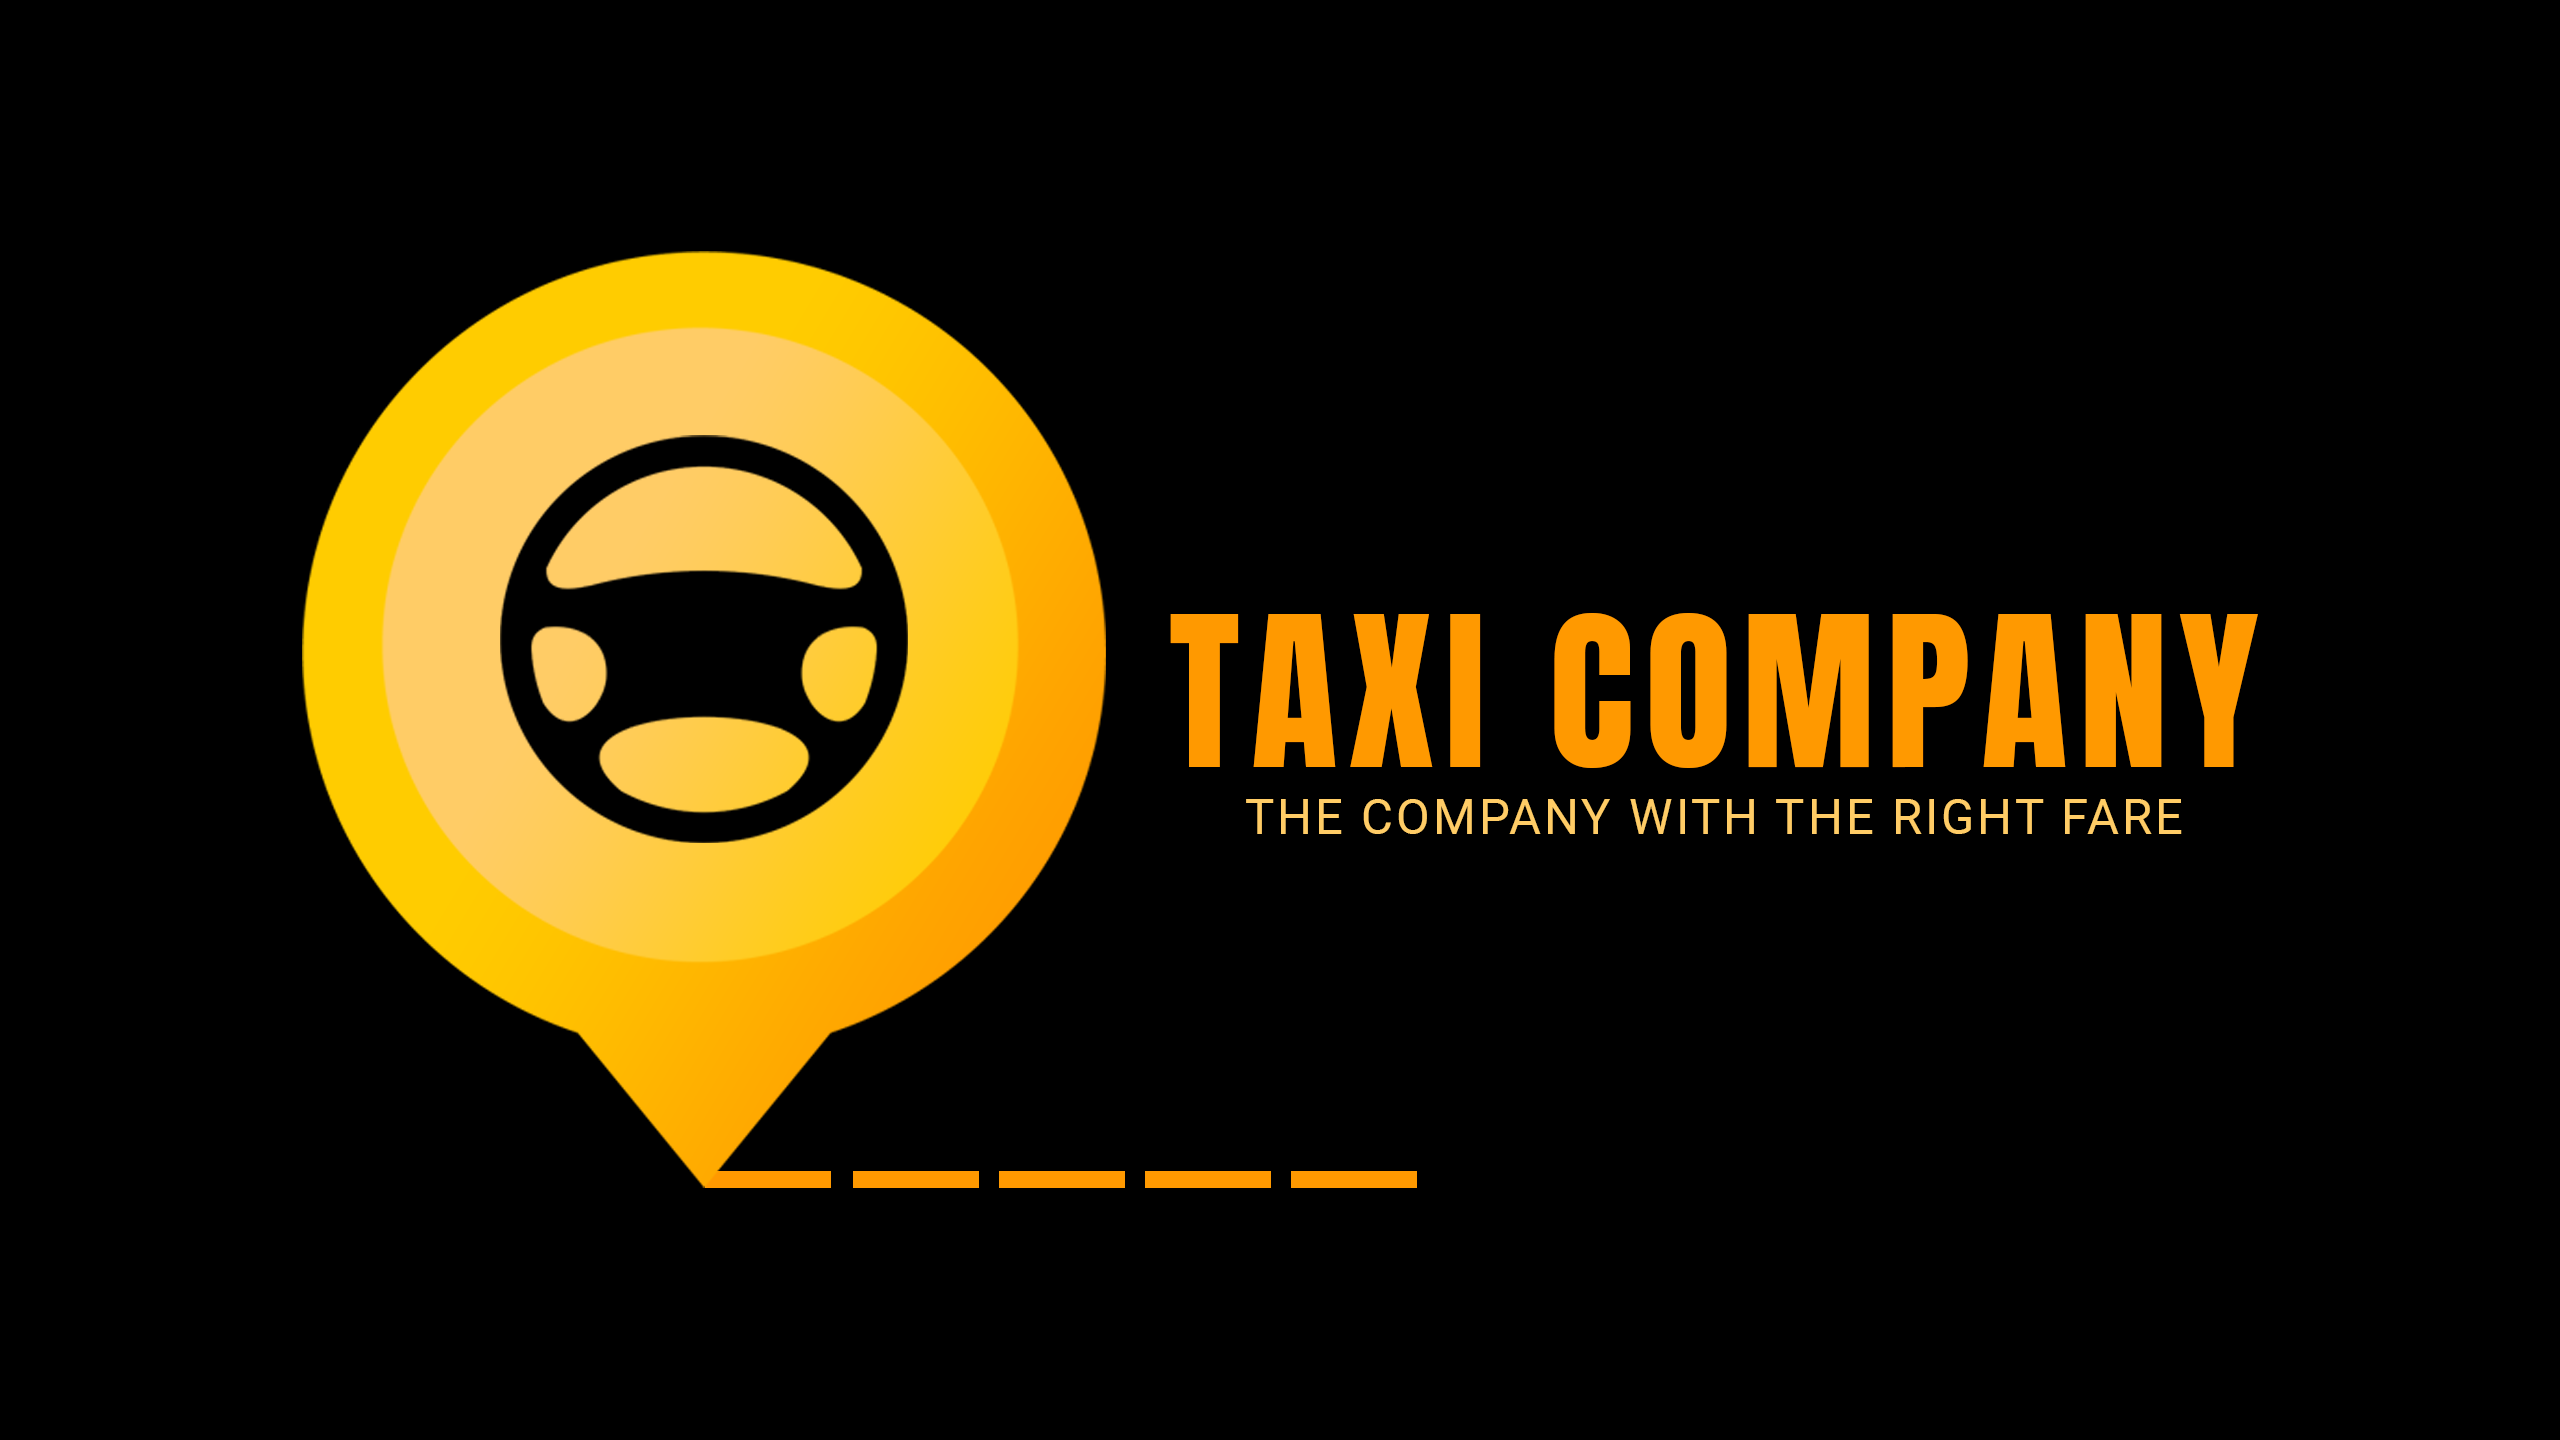 Taxi company logo